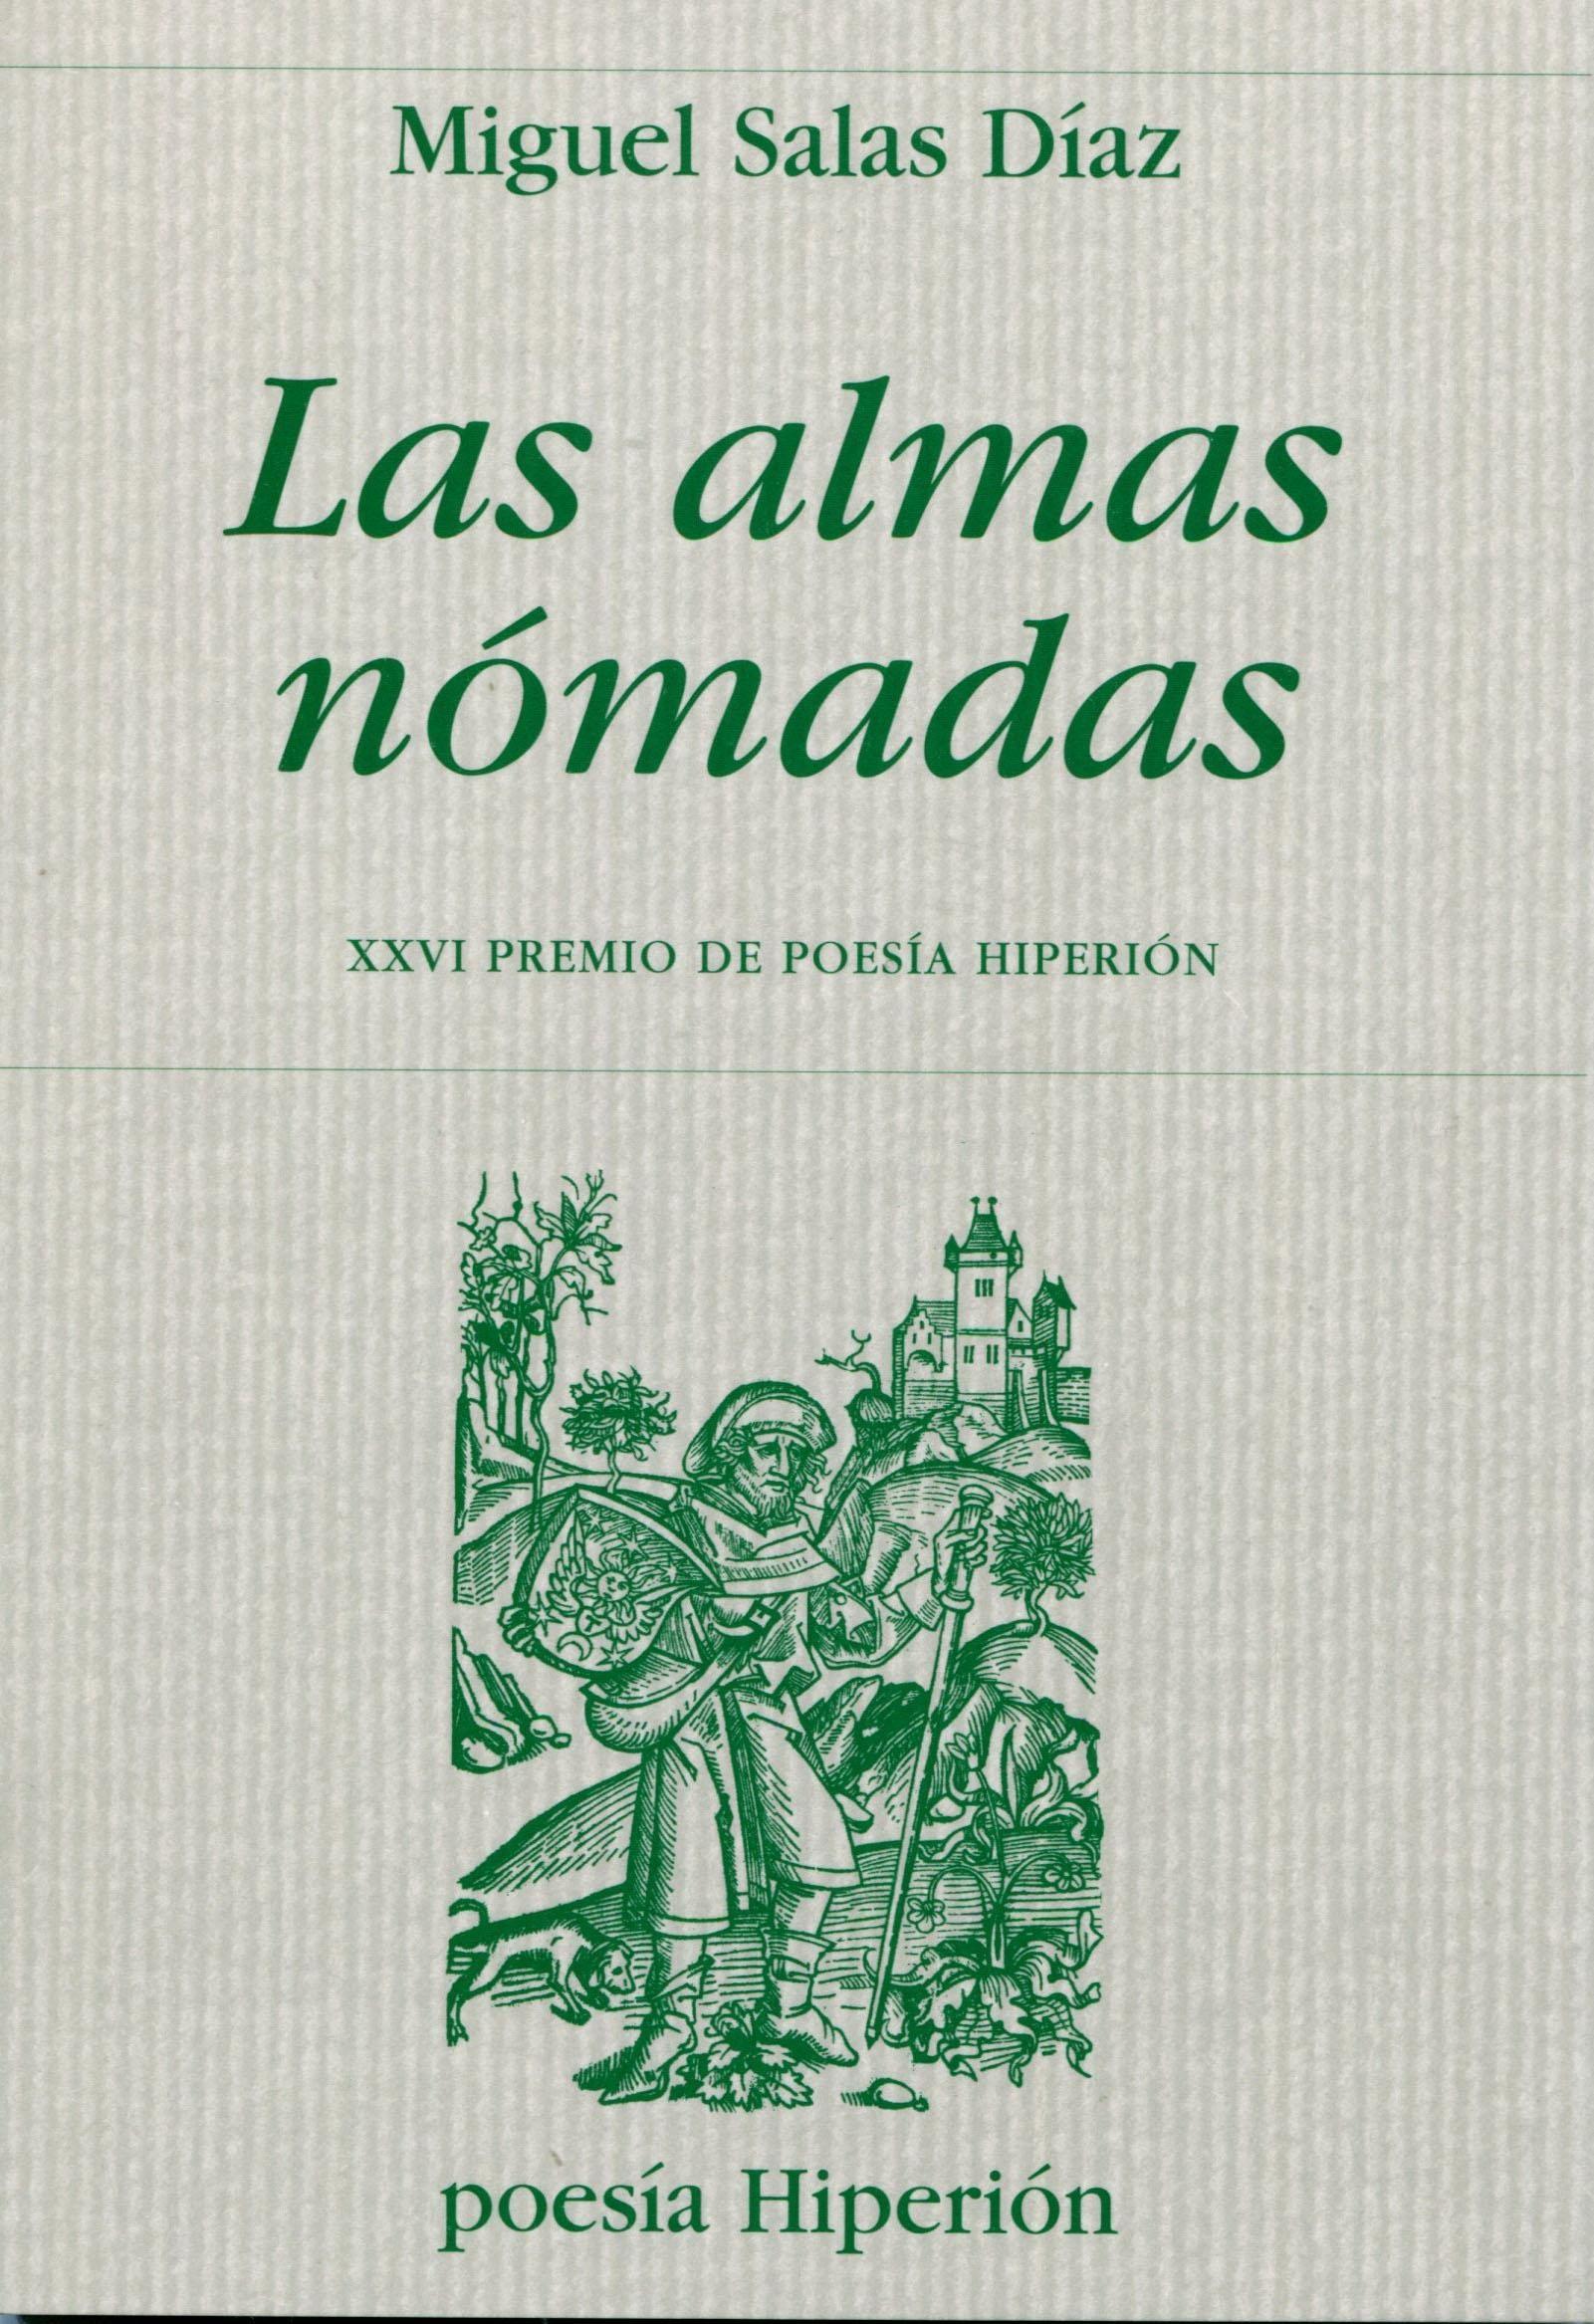 Almas nómadas, Las "XXVI Premio de poesía Hiperión"